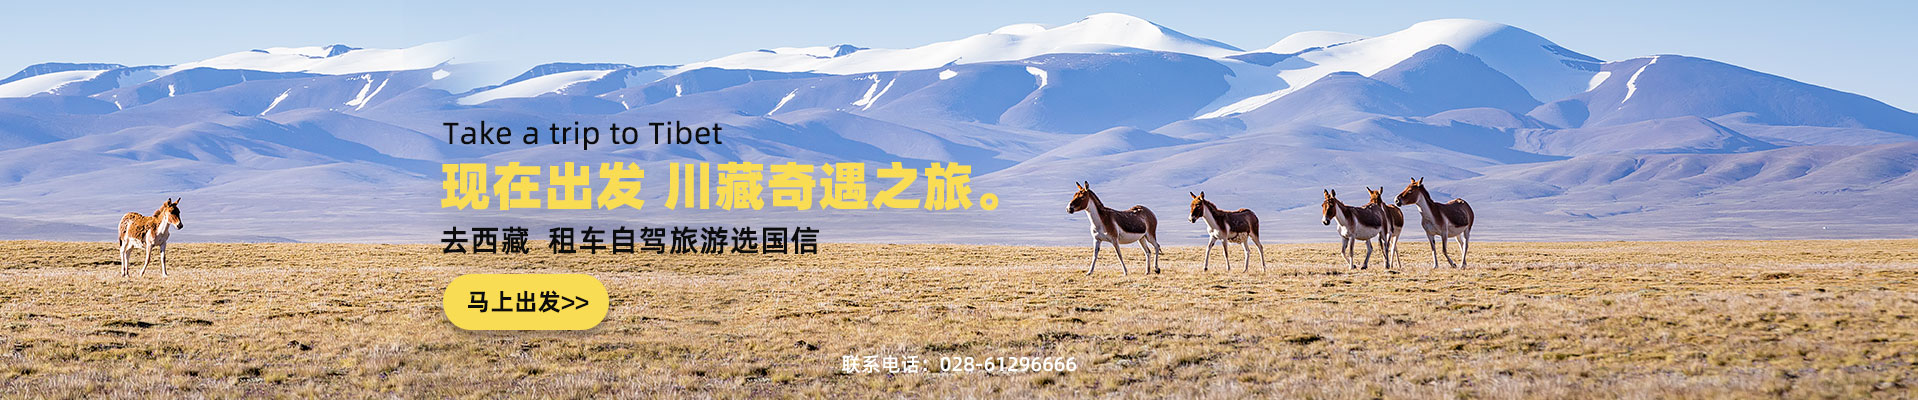 川藏线租车旅游